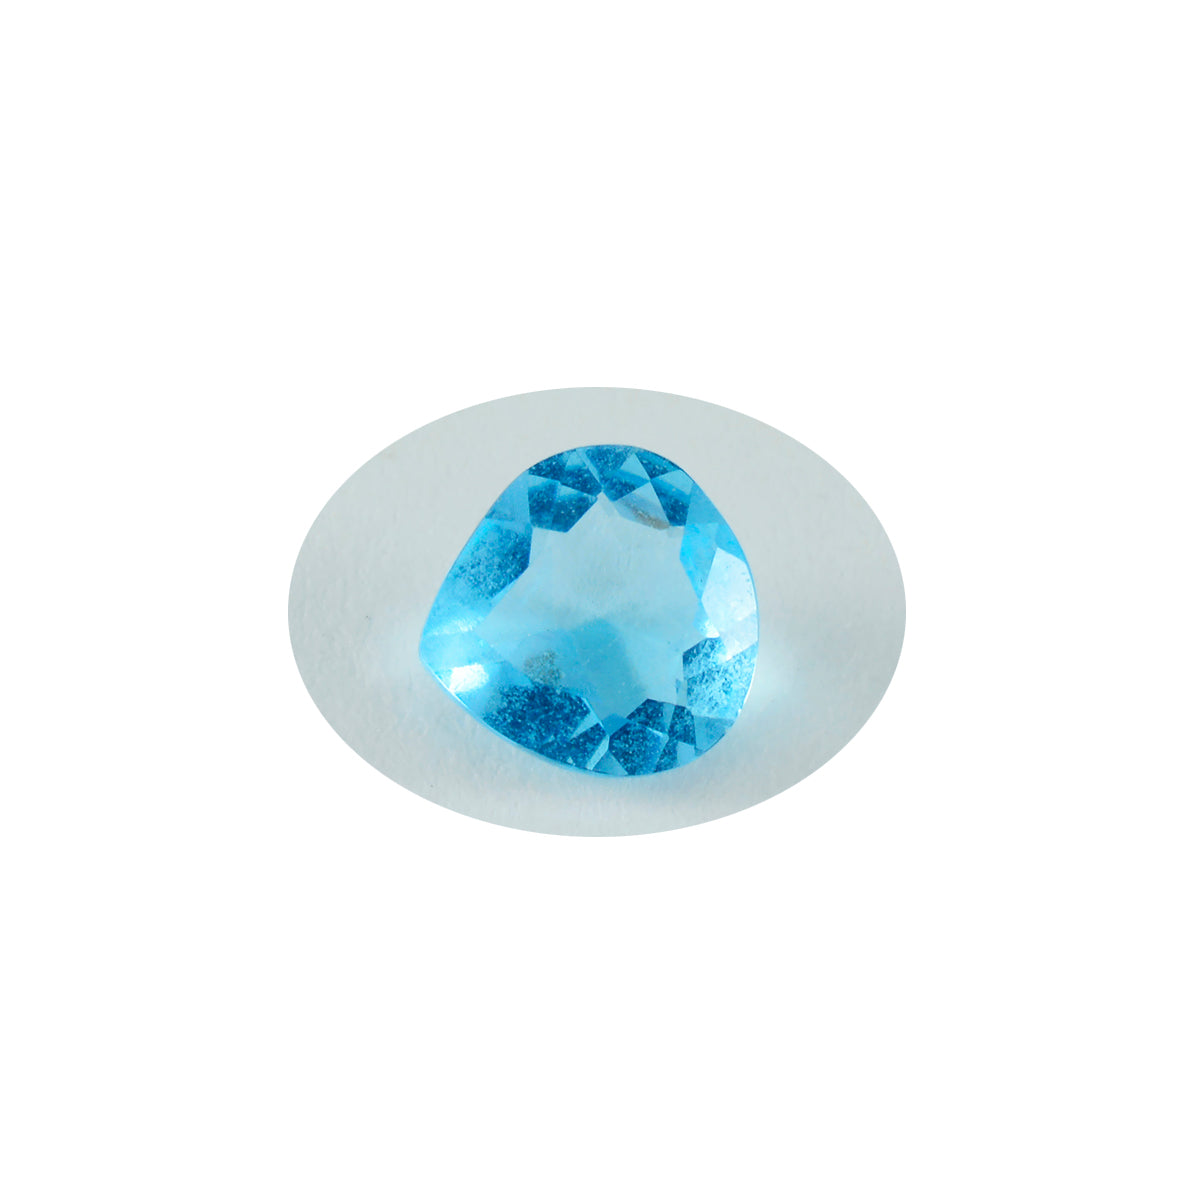 Riyogems 1 pièce topaze bleue cz à facettes 11x11mm en forme de cœur belle pierre précieuse de qualité